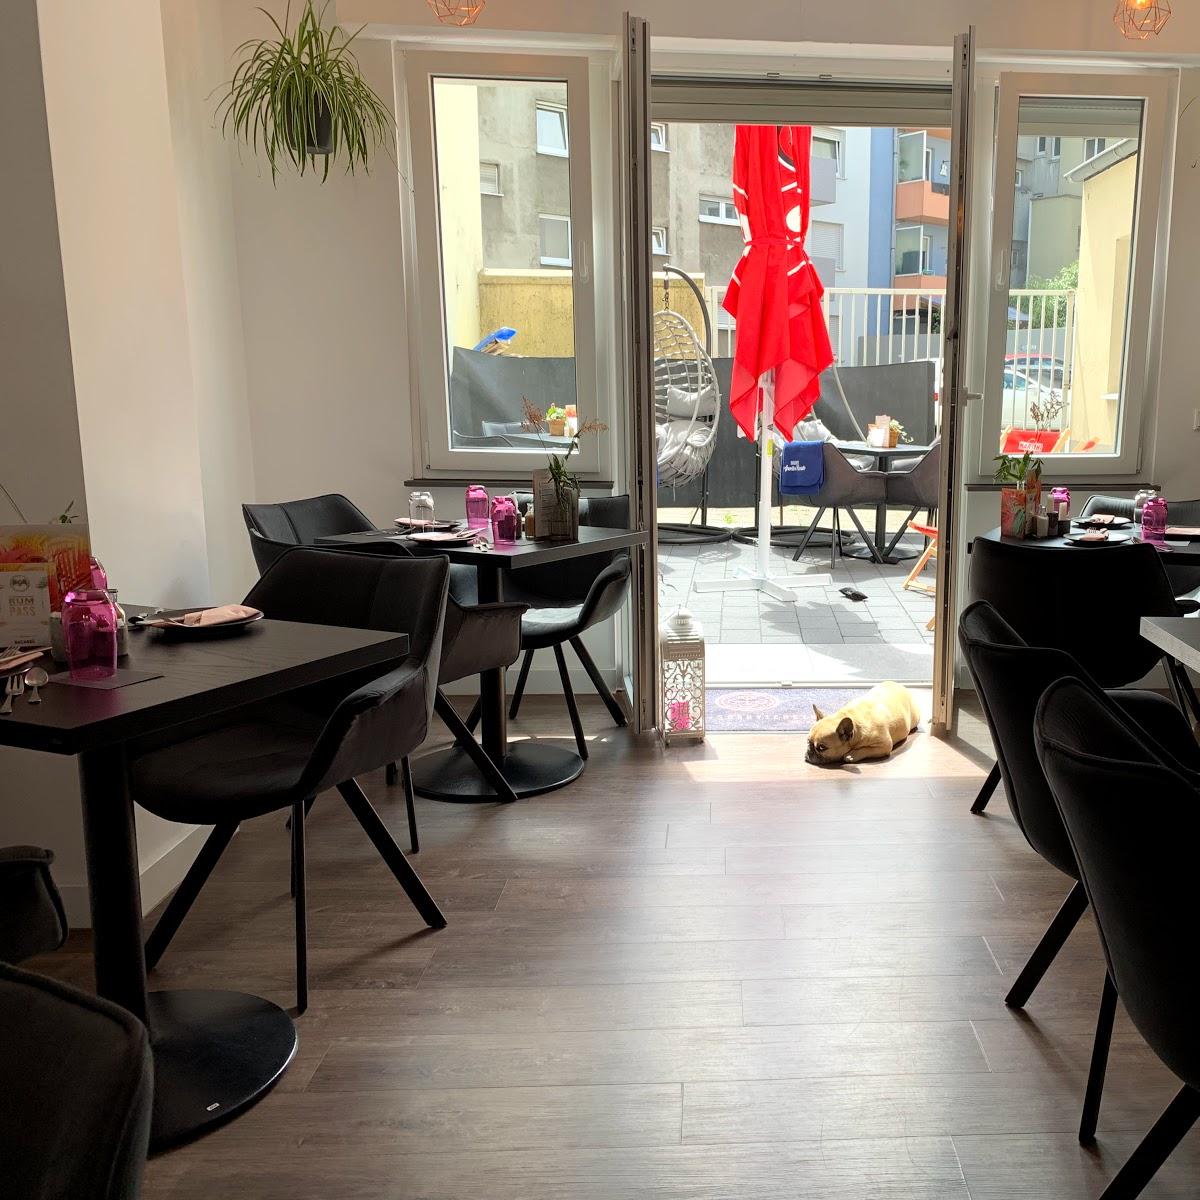 Restaurant "Meeting, die Café-Bar" in Dortmund